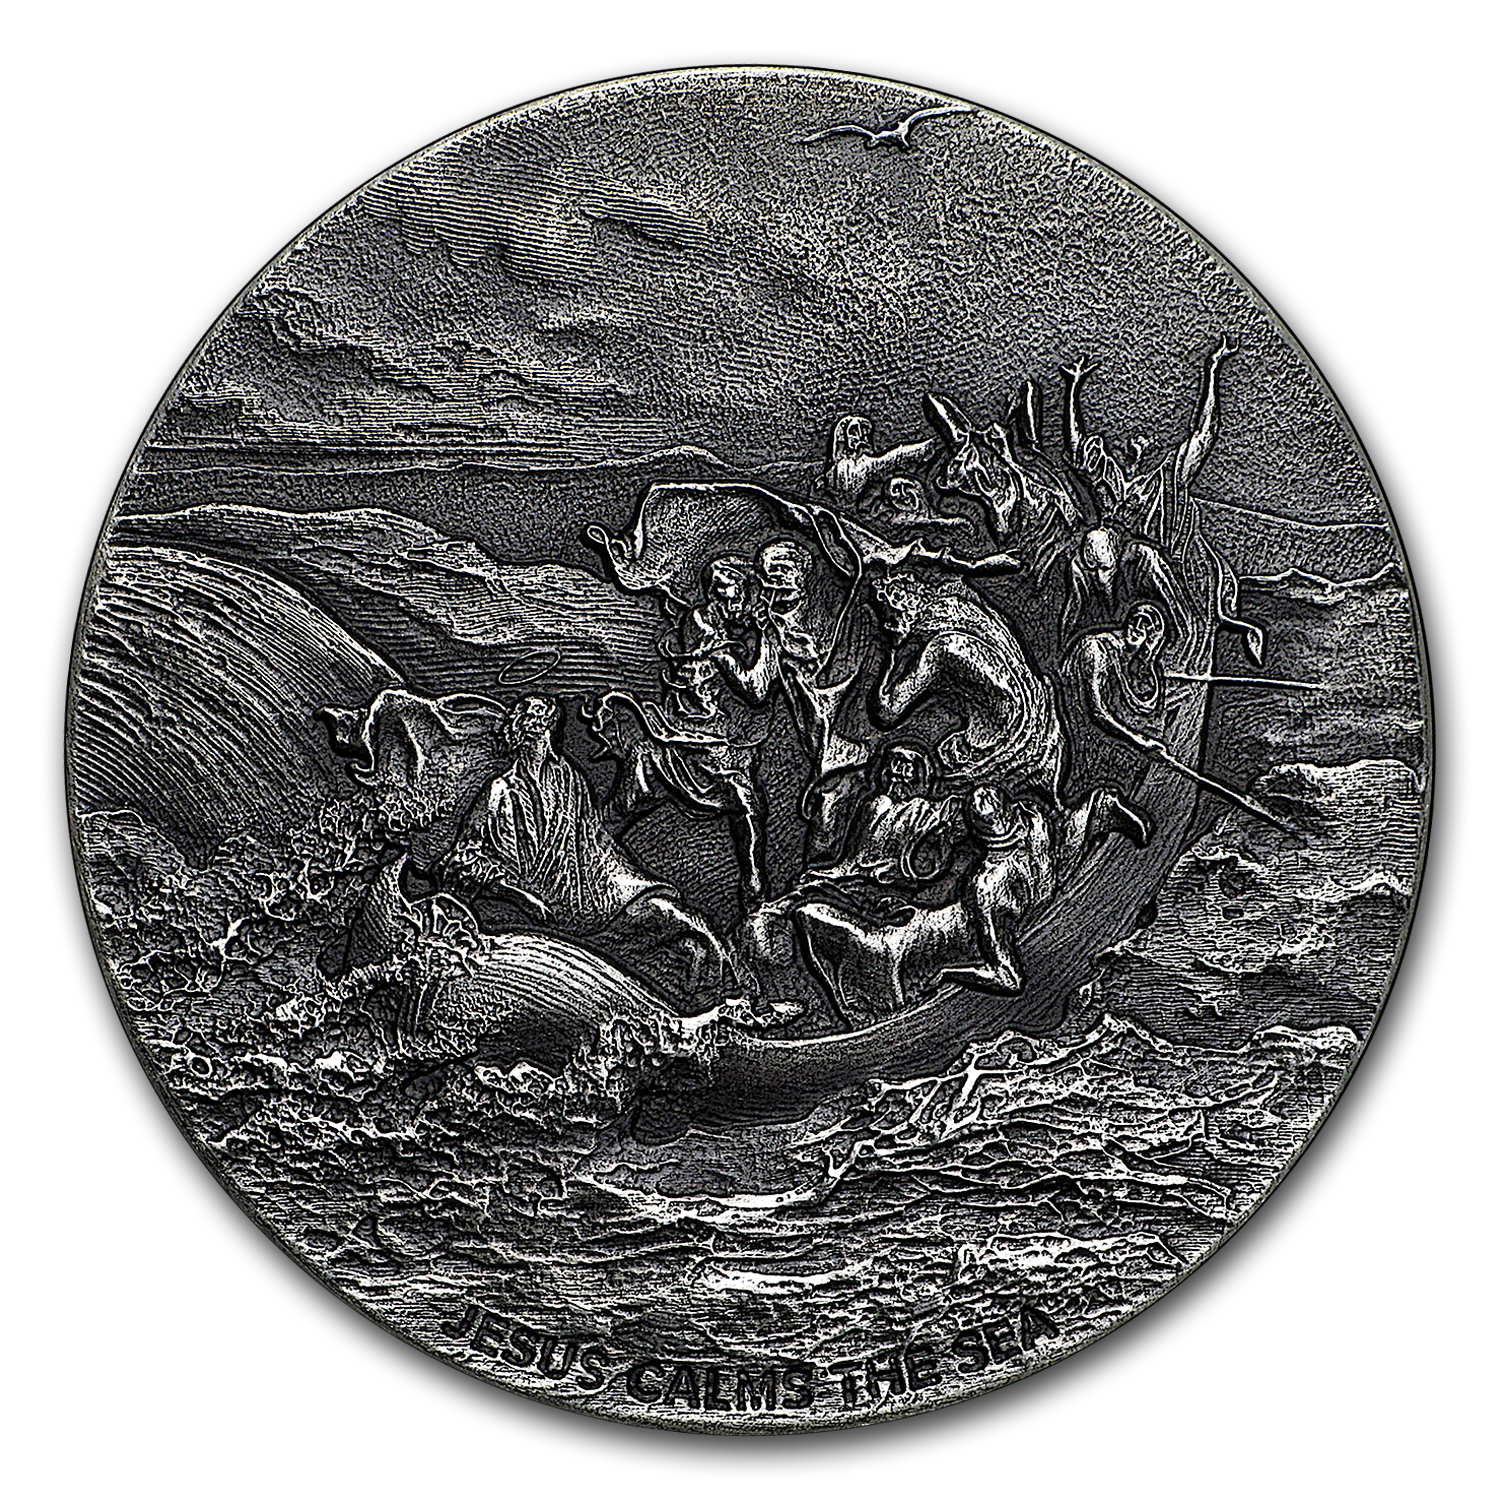 Buy 2017 2 oz Silver Coin - Biblical Series (Jesus Calms the Sea)